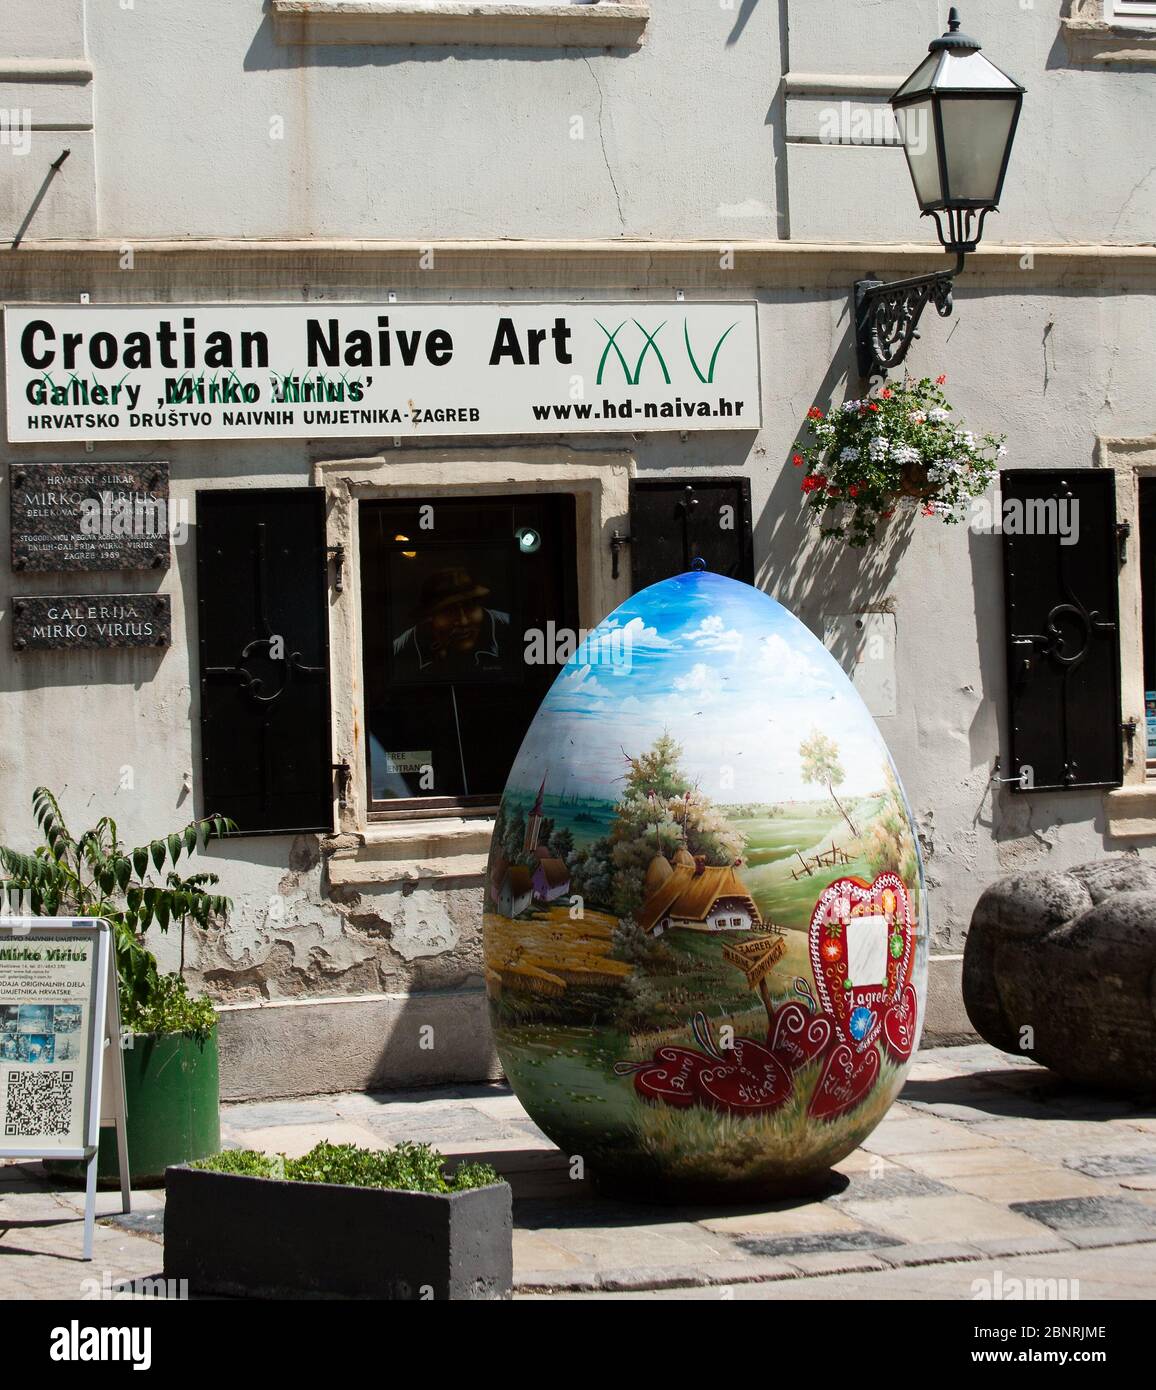 Devant la galerie d'art naïve croate, dans la rue de Zagreb, se trouve un gros œuf de Pâques peint Banque D'Images